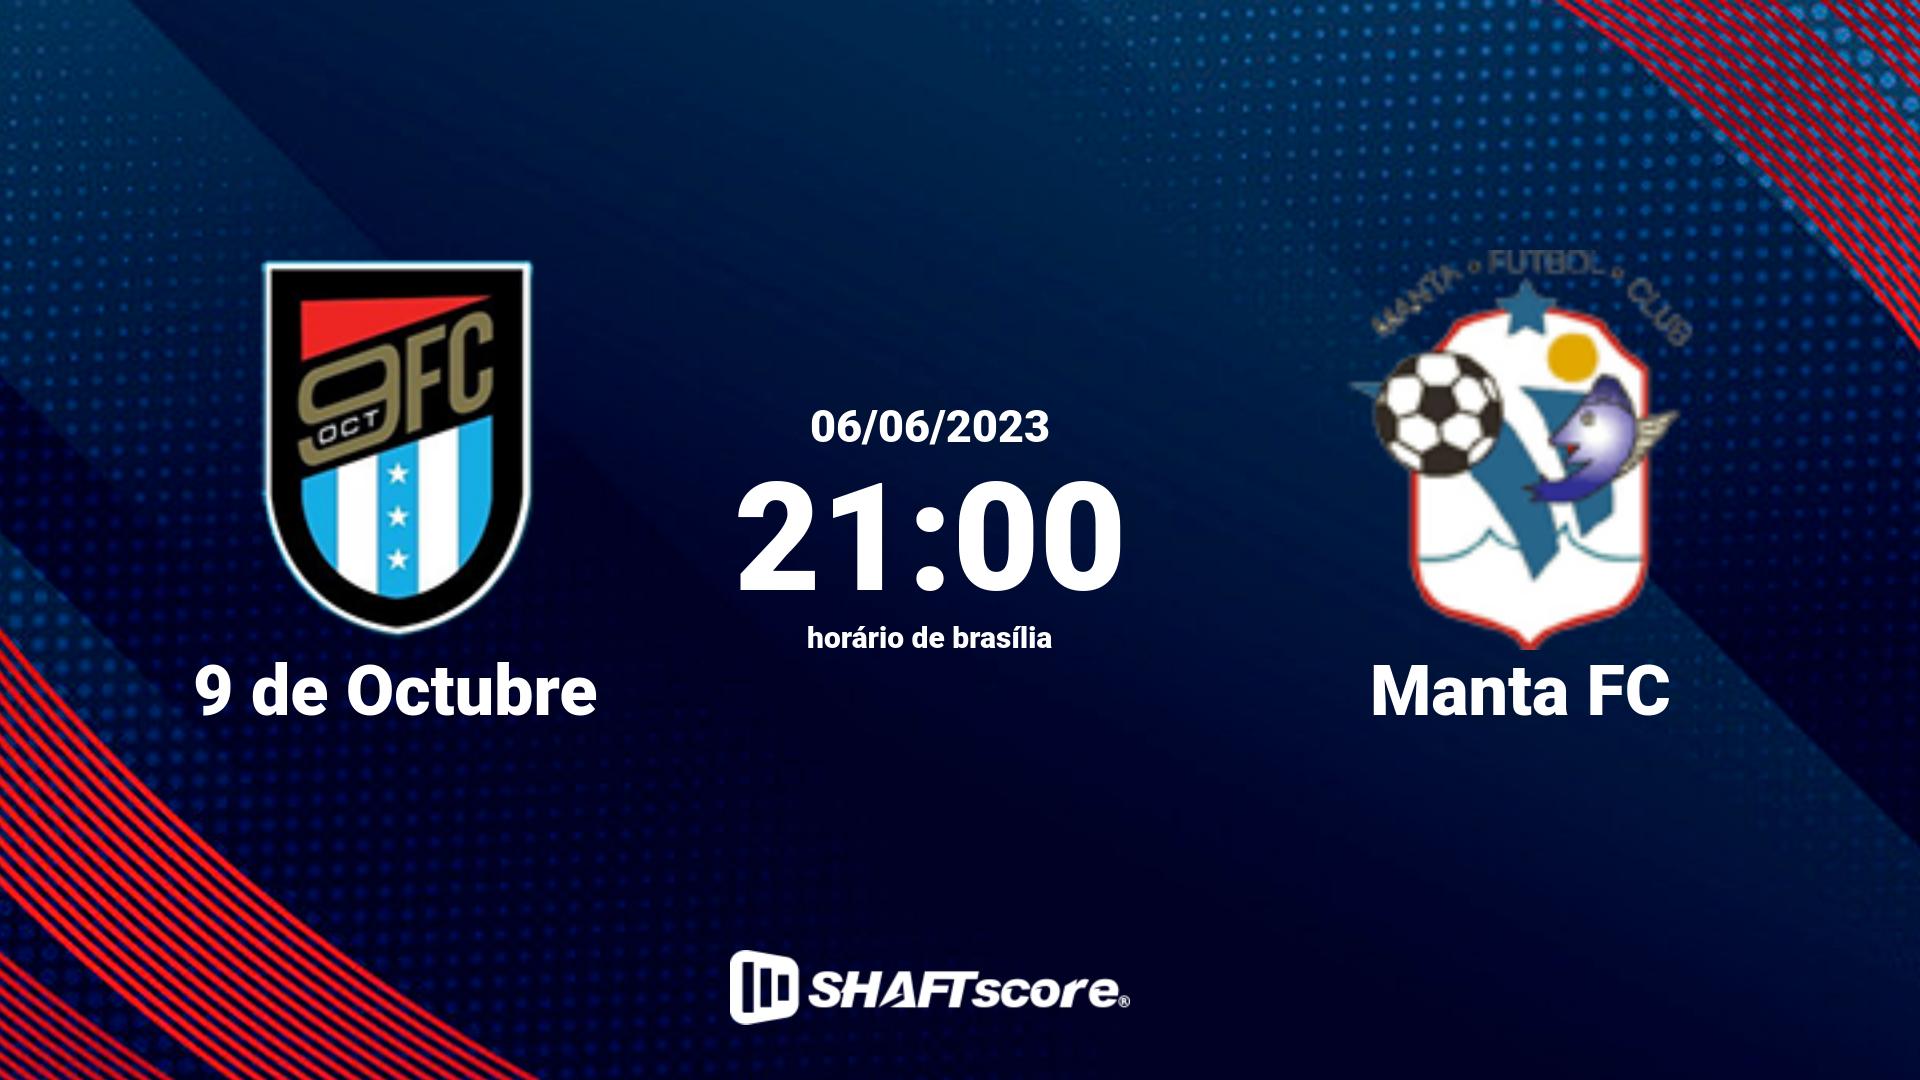 Estatísticas do jogo 9 de Octubre vs Manta FC 06.06 21:00